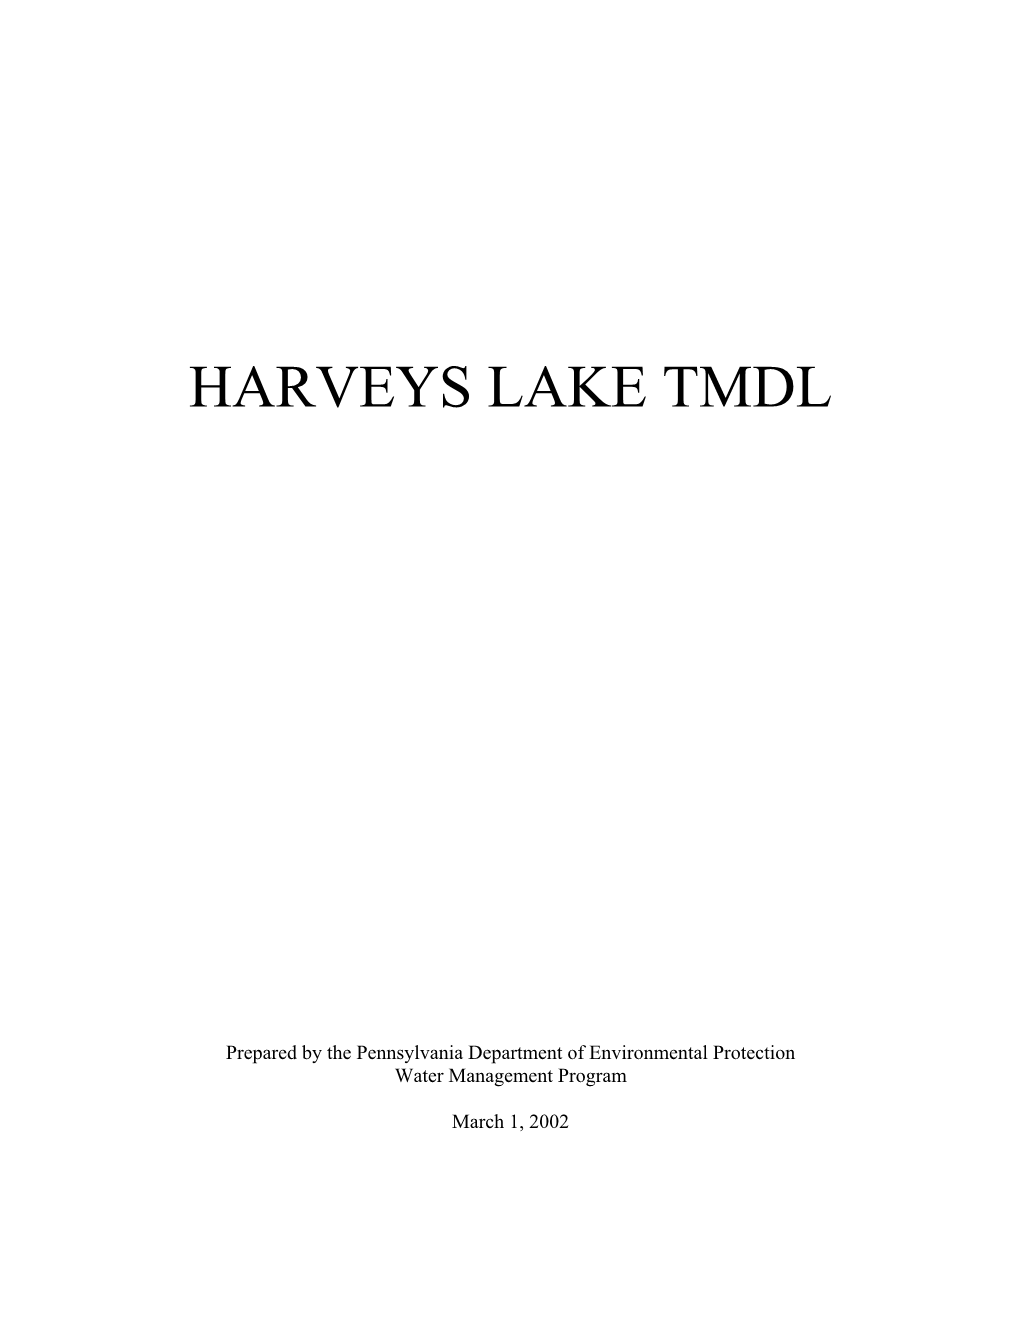 Harveys Lake Tmdl